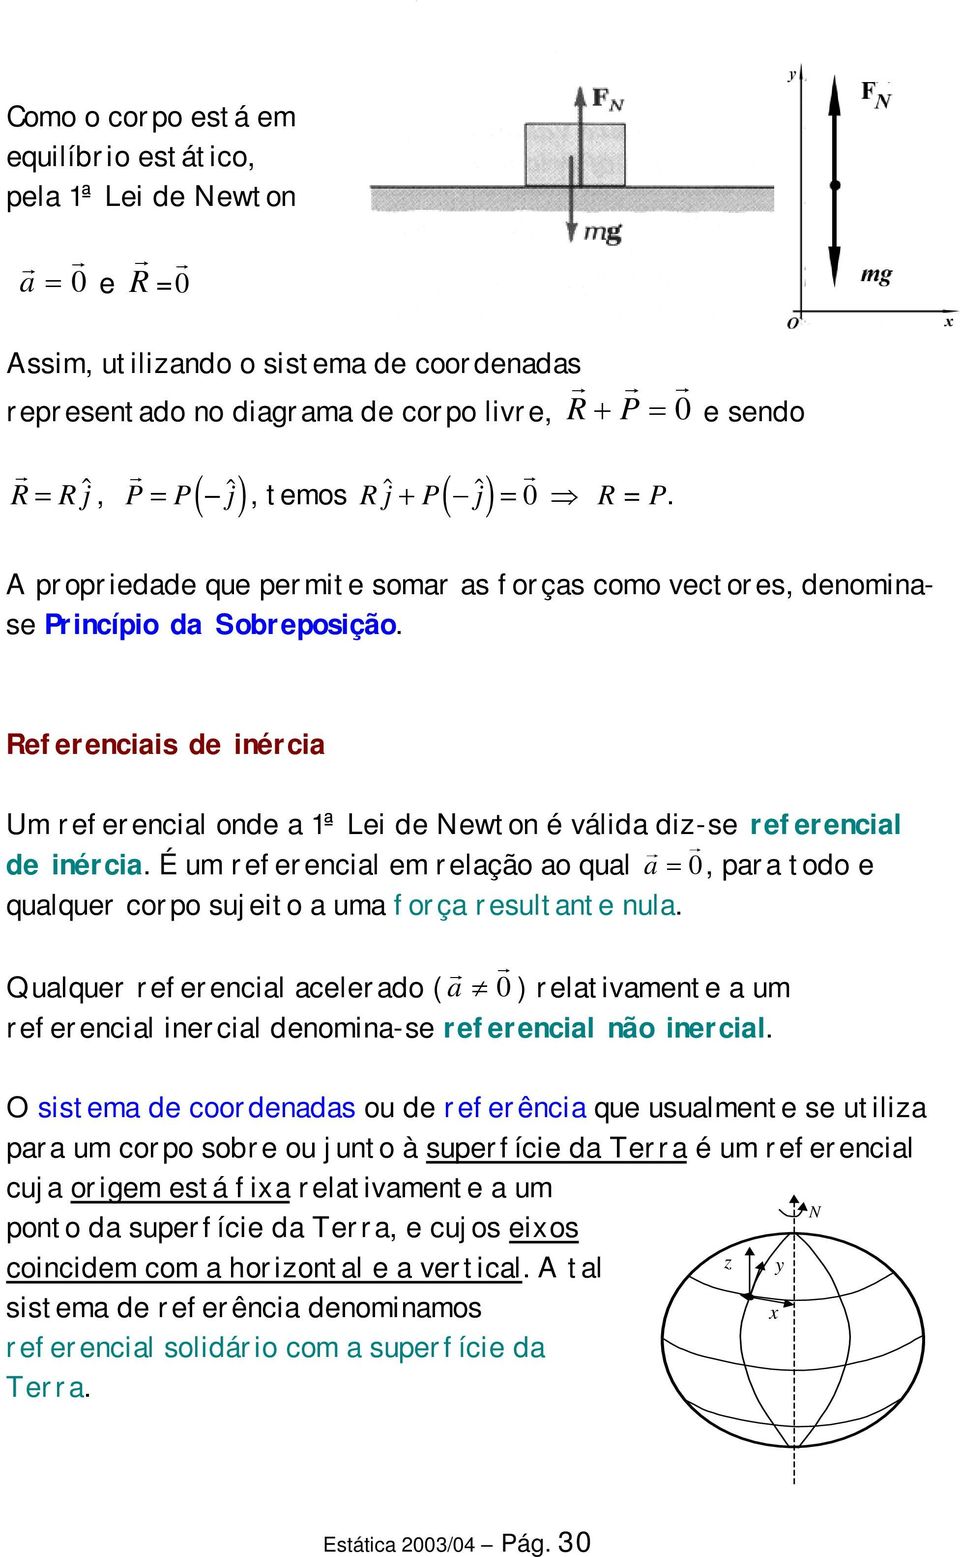 Referencas de nérca Um referencal onde a 1ª Le de Newton é válda dz-se referencal de nérca. É um referencal em relação ao qual 0 a =, para todo e qualquer corpo sujeto a uma força resultante nula.